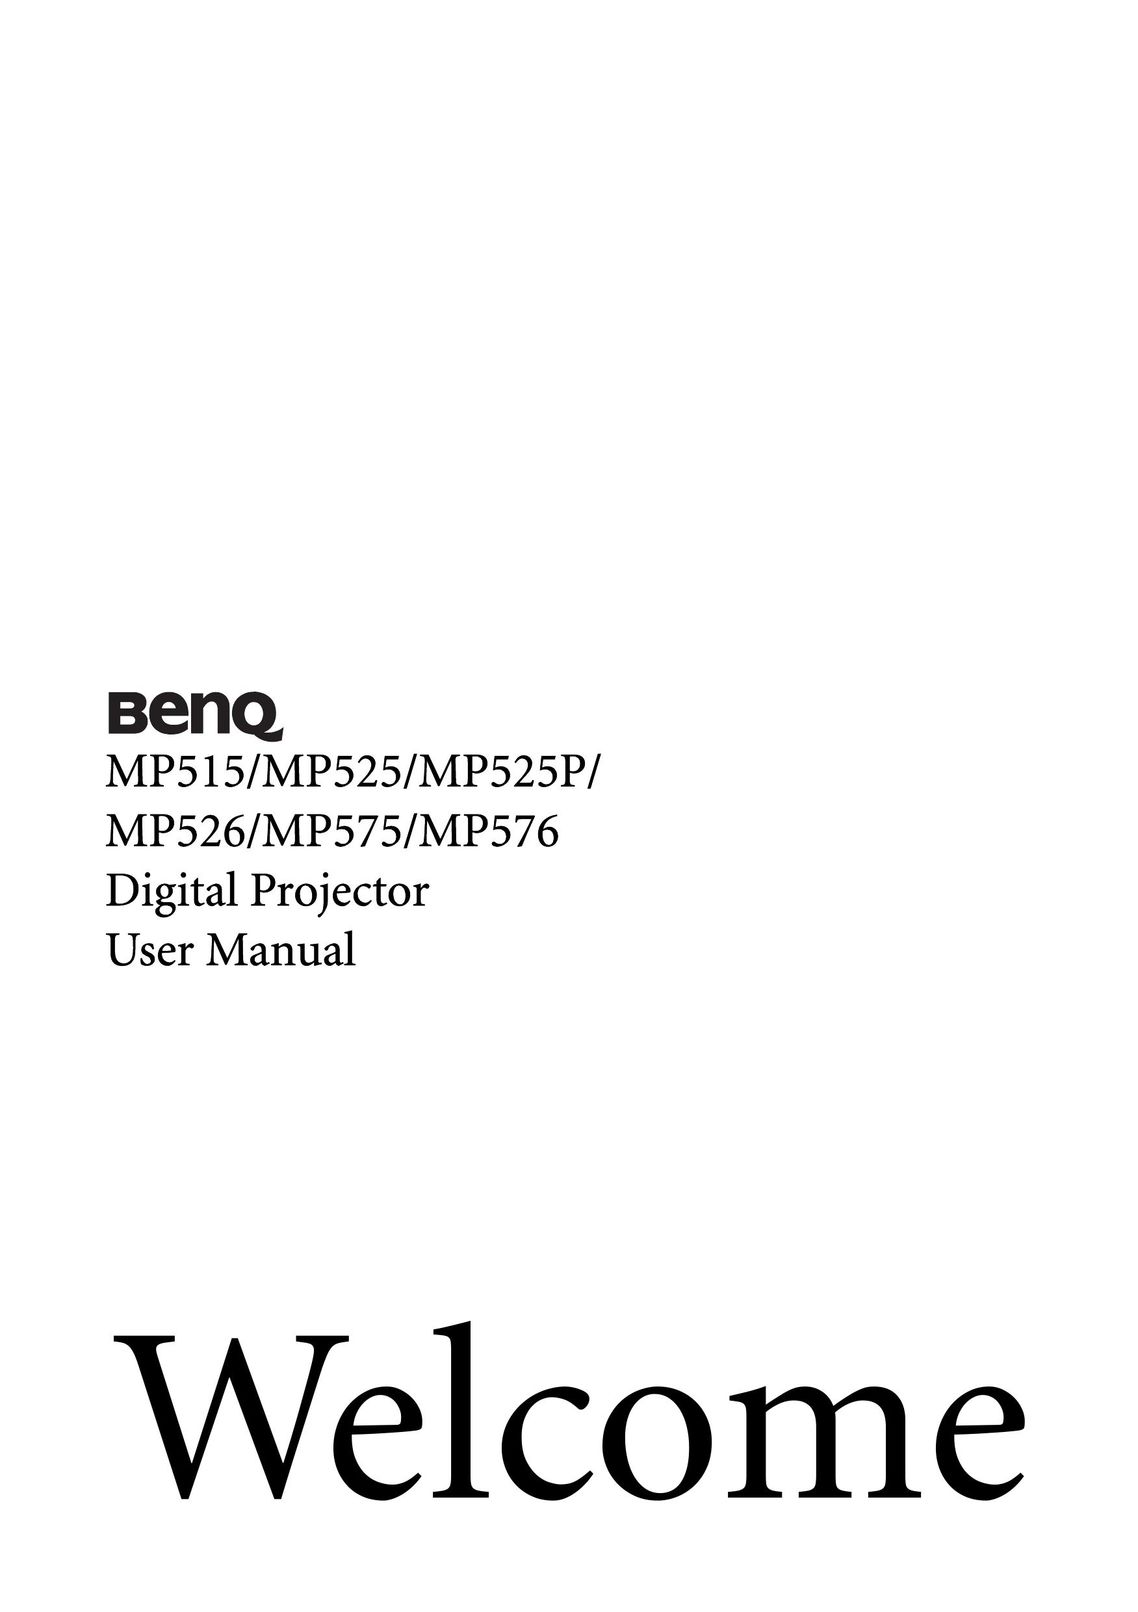 BenQ MP525 Projector User Manual